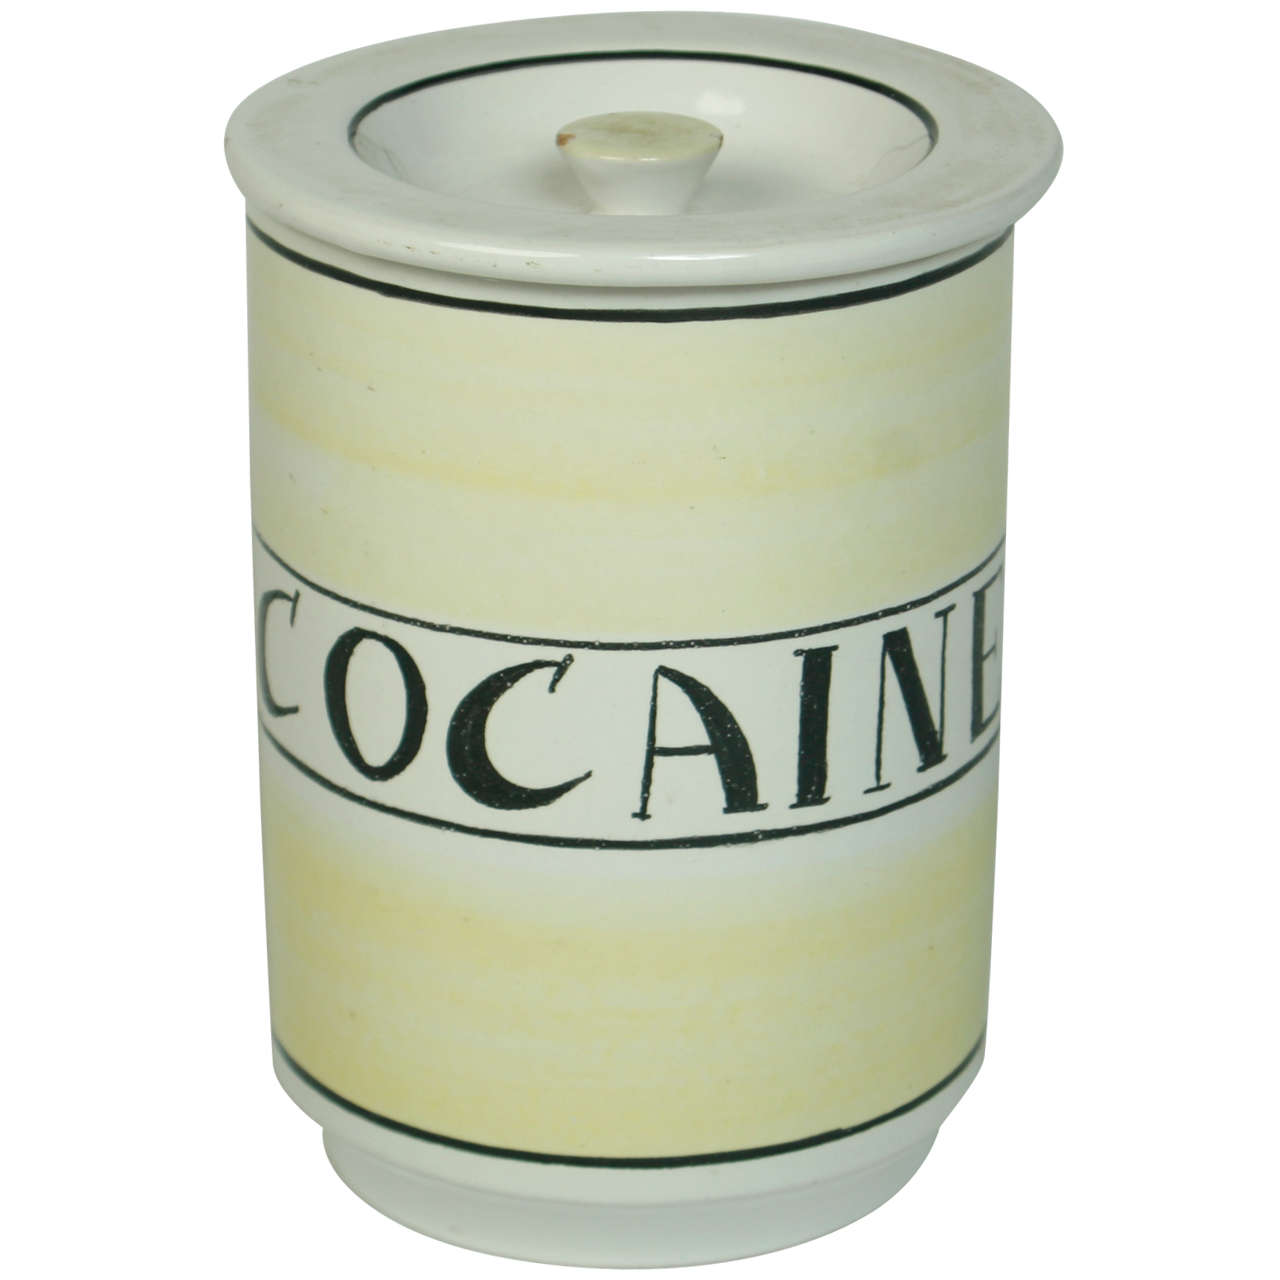 Italian Ceramic "Cocaine" Cookie Jar For Sale